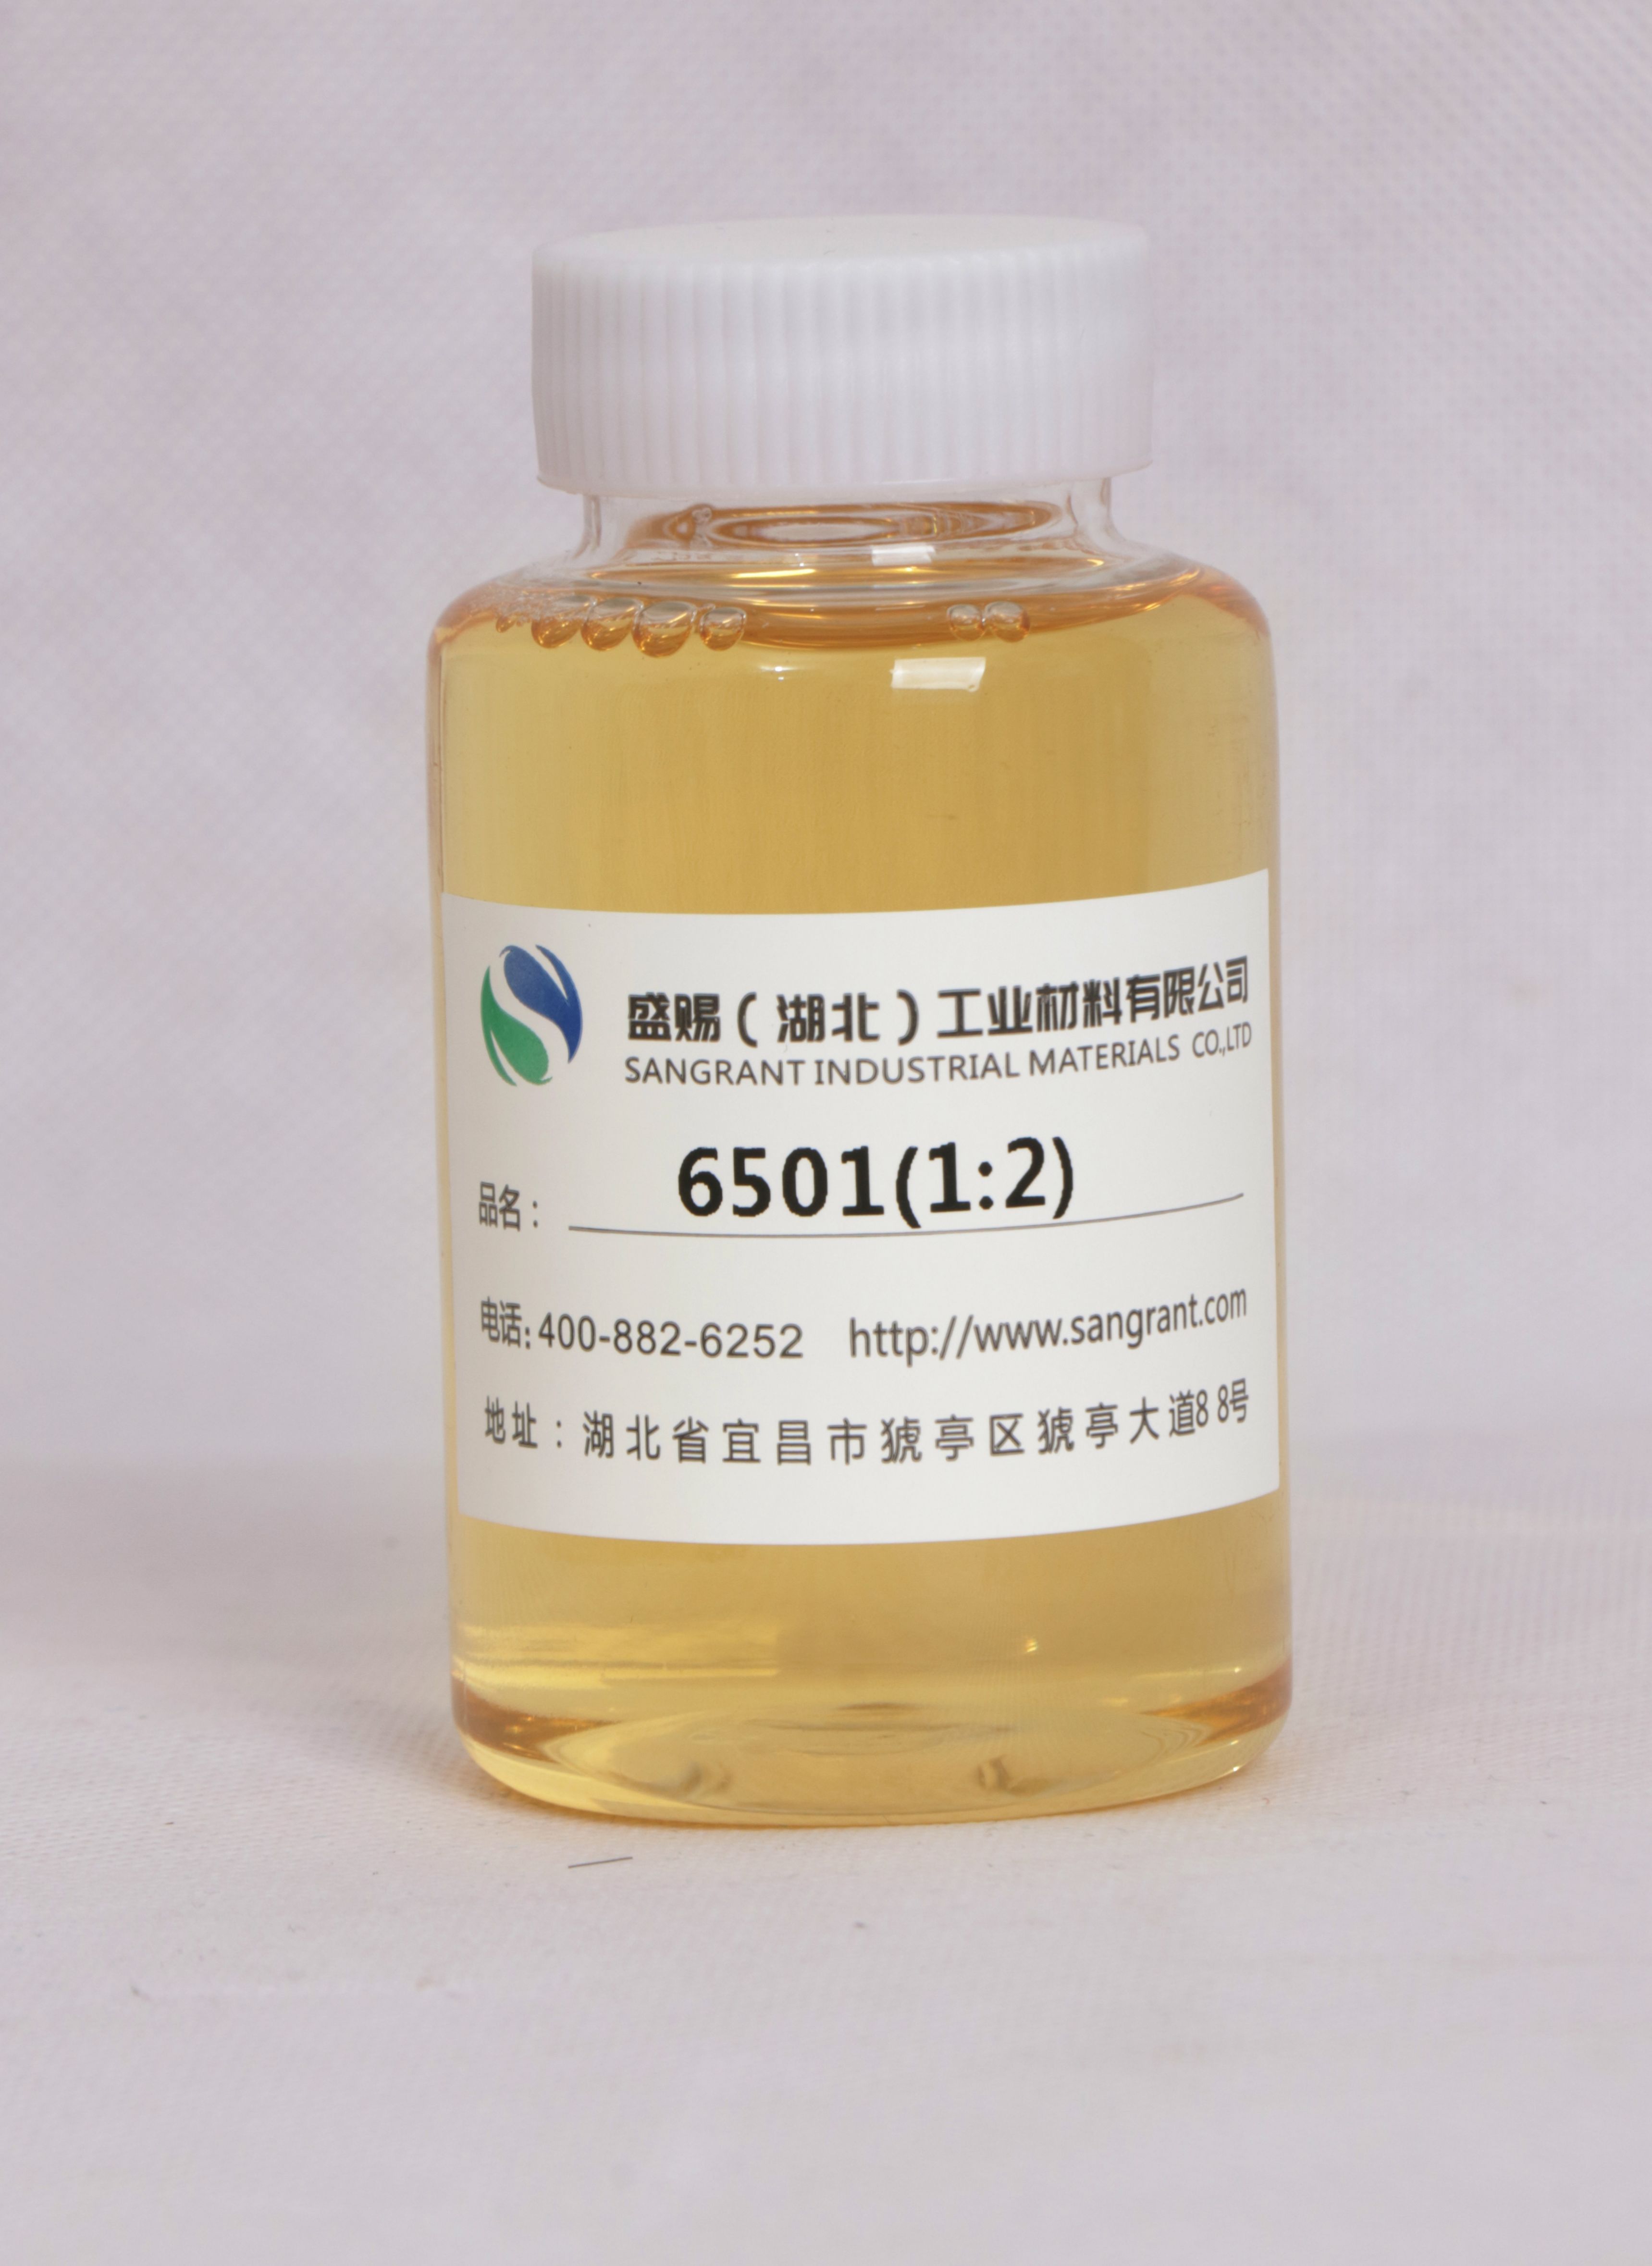 盛赐 椰子油脂肪酸二乙醇酰胺 6501 1:2日化增稠、纺织助剂乳化剂 质量稳定